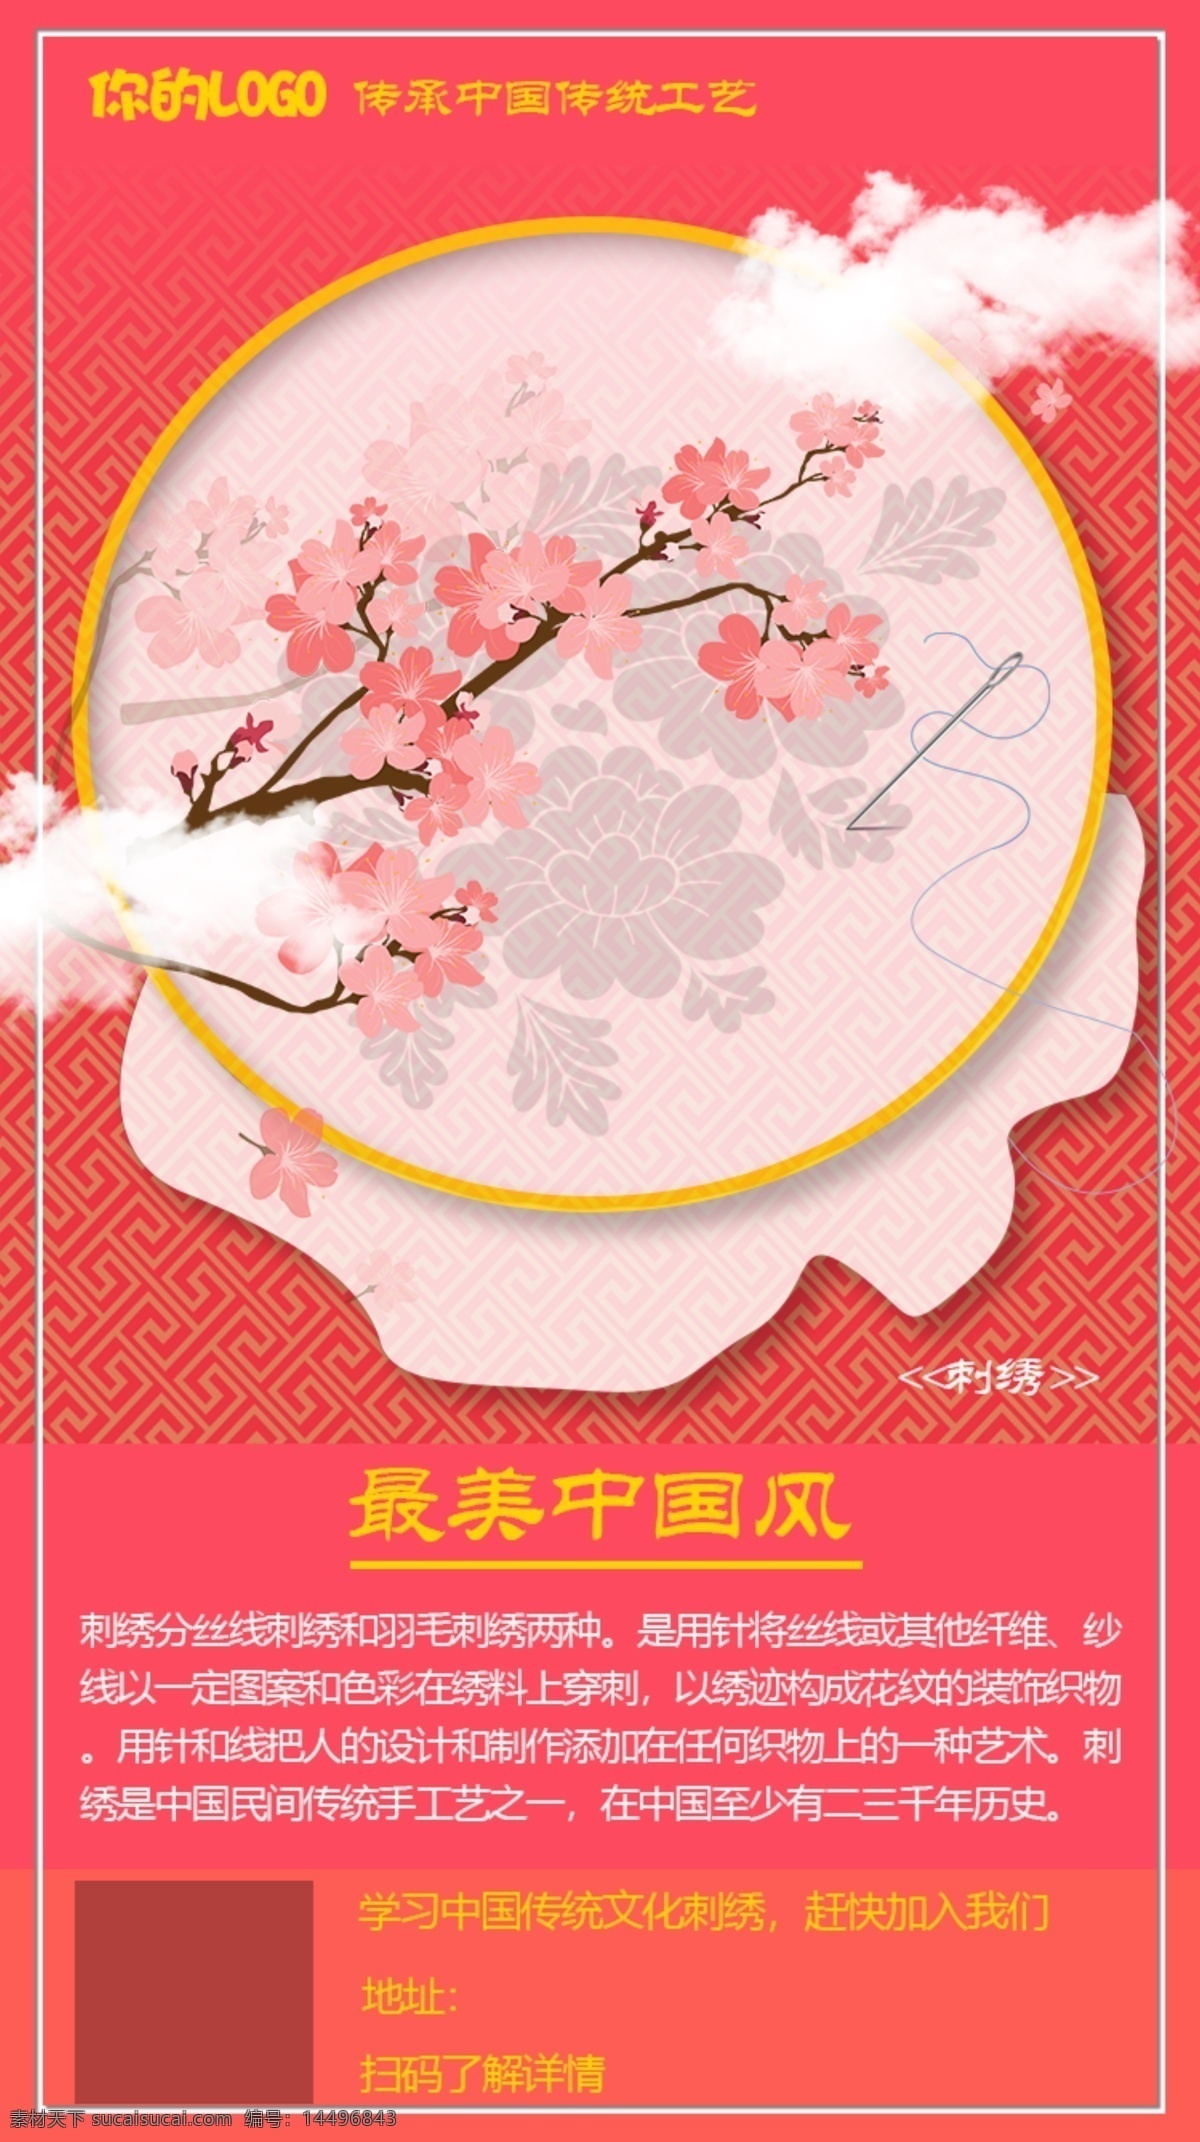 刺绣 中国 传统 手工 文艺 海报 中国风 红色 教育 文化 传统习俗 针 撑子 花 传统手工工艺